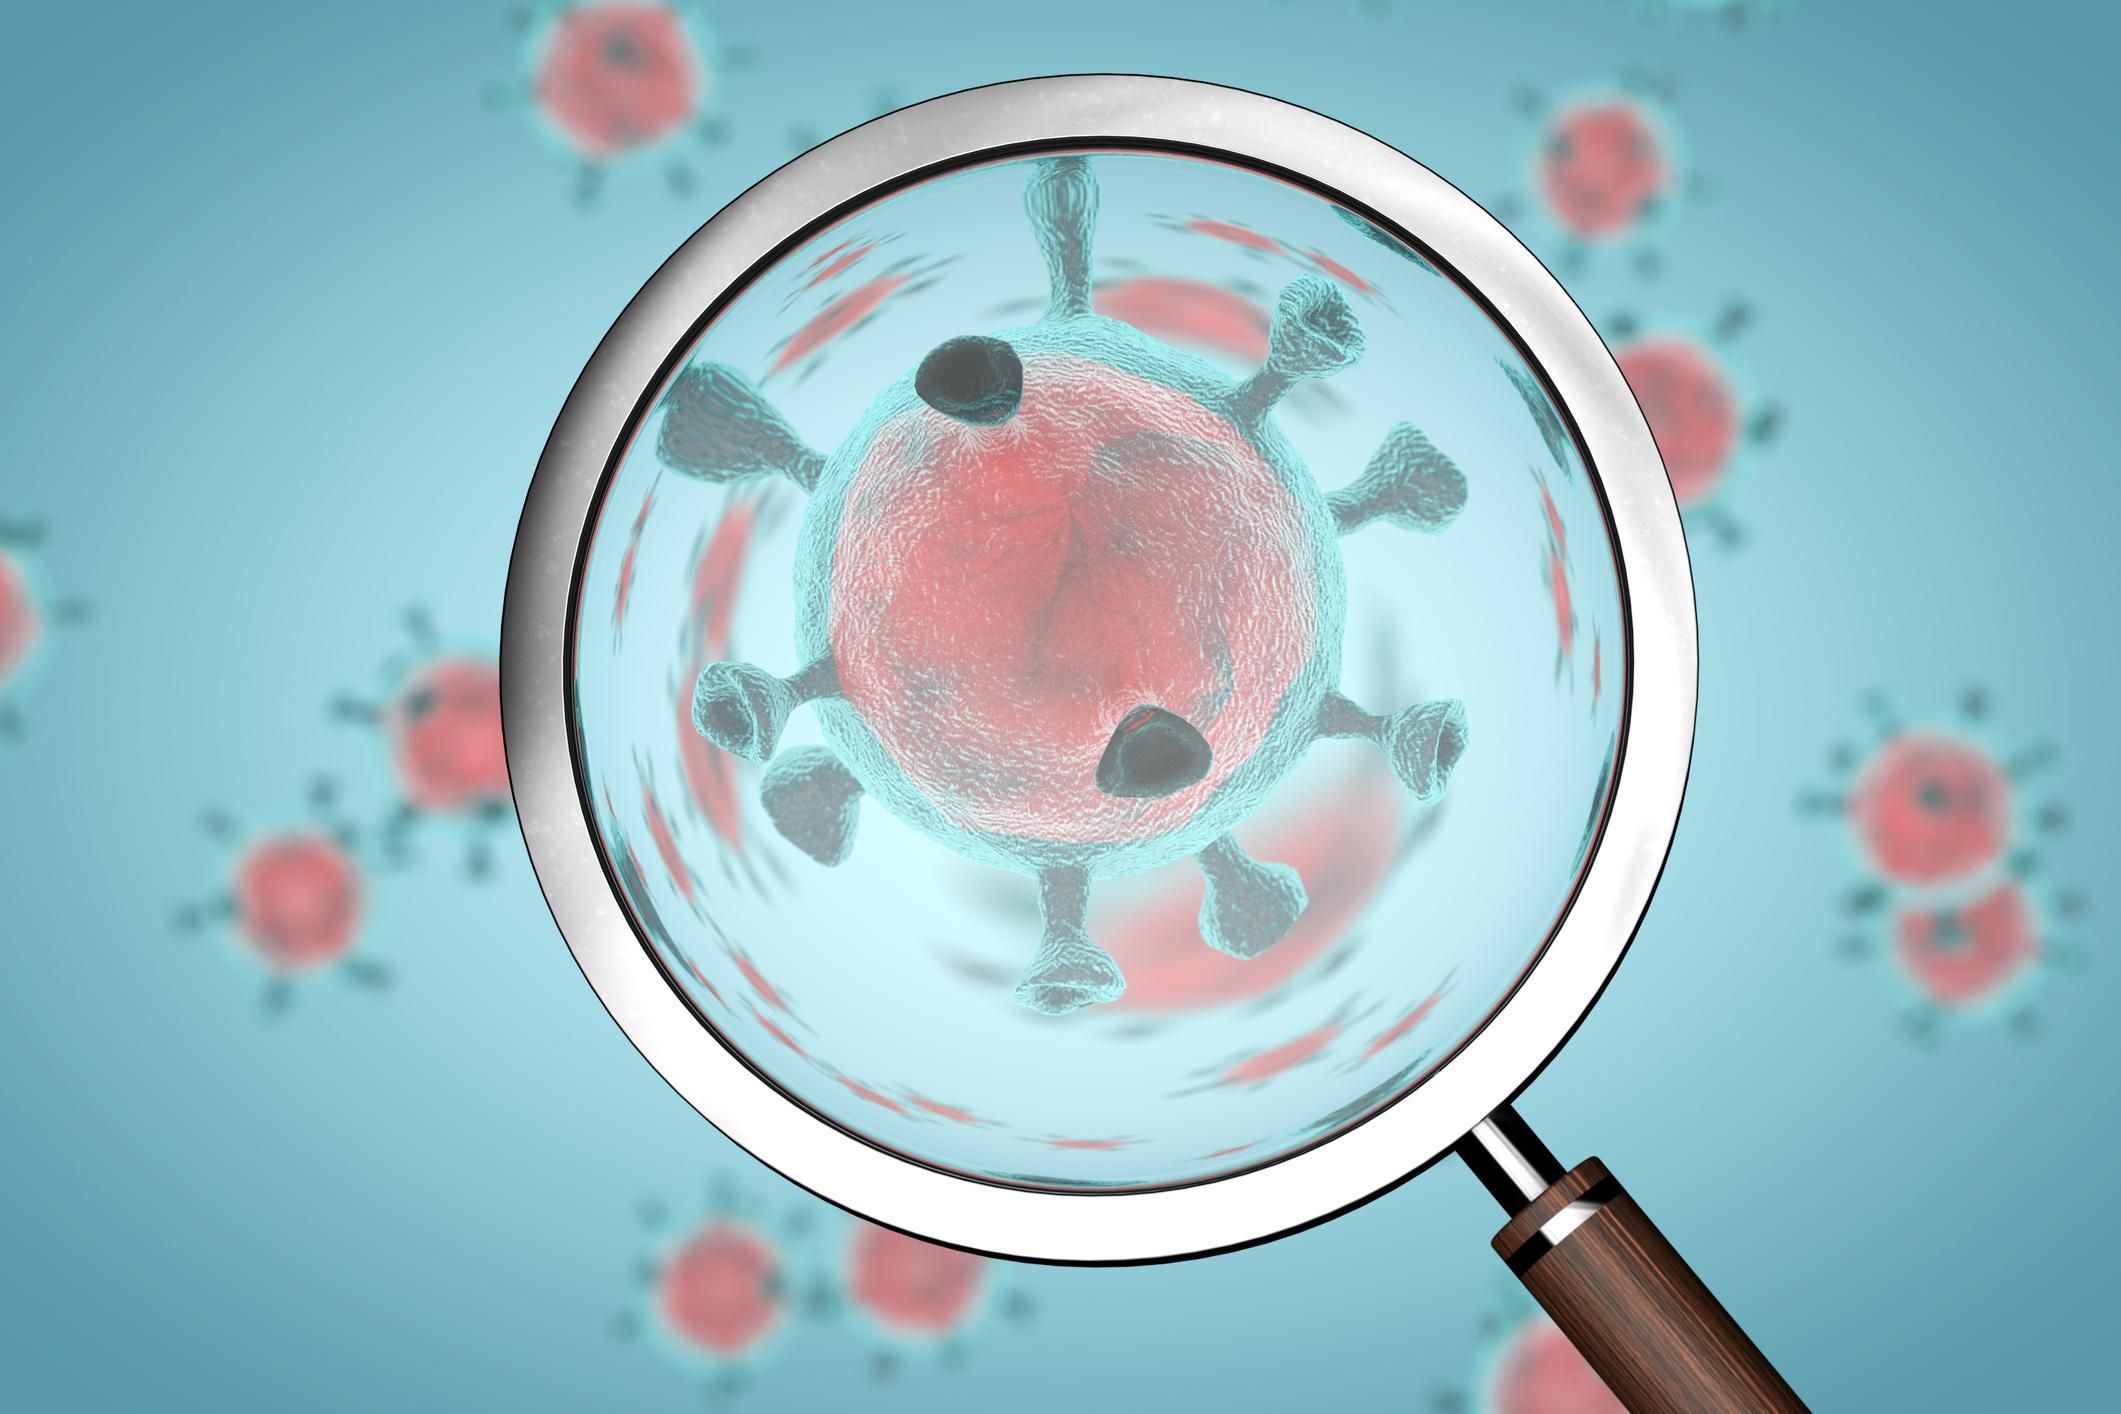 США не исключают лабораторное происхождение коронавируса, – СМИ